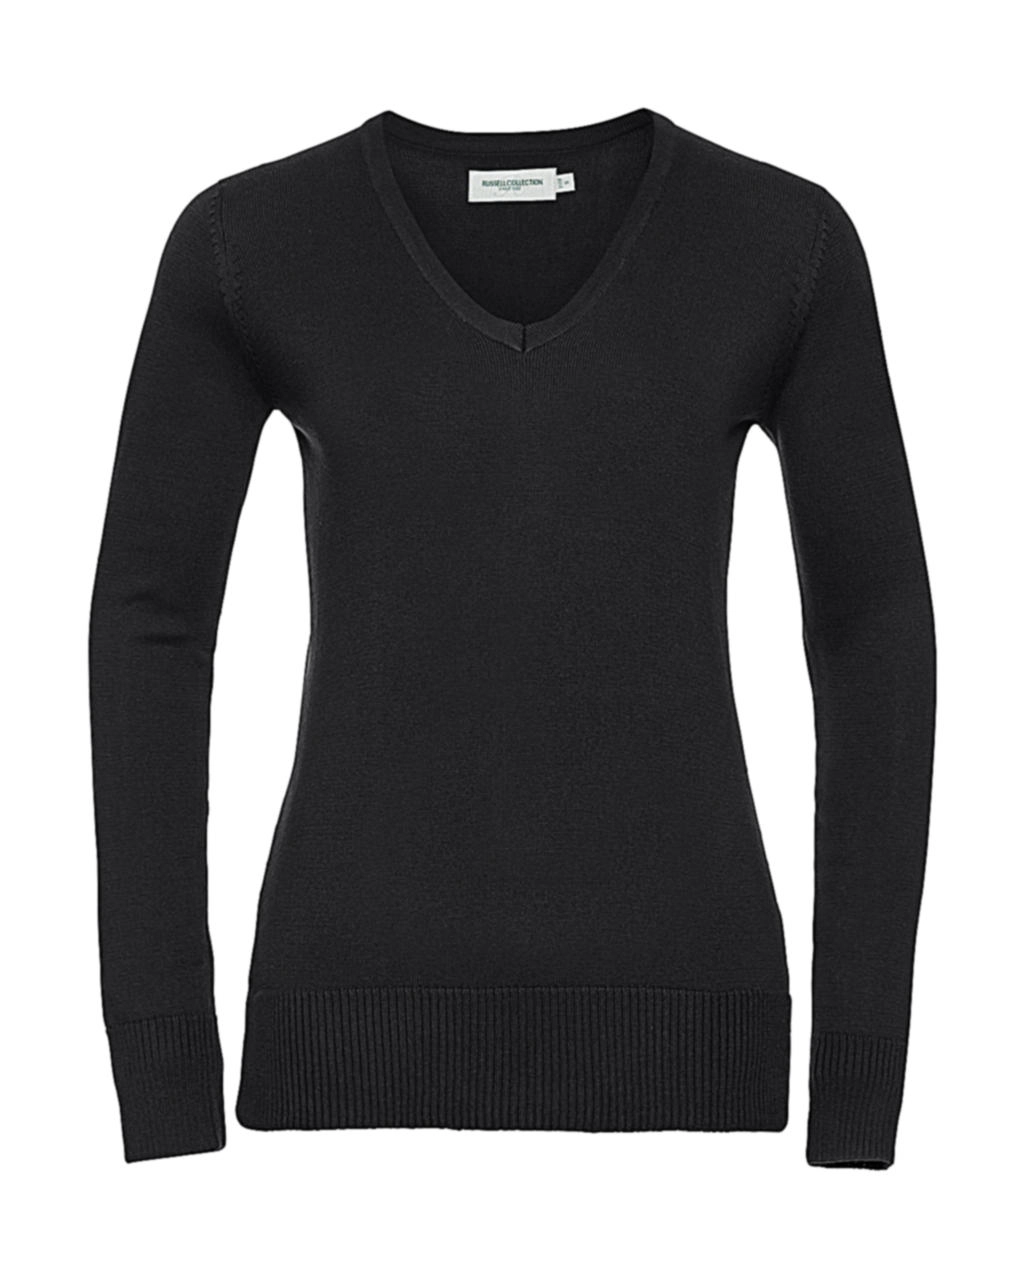 Ladies’ V-Neck Knitted Pullover zum Besticken und Bedrucken in der Farbe Black mit Ihren Logo, Schriftzug oder Motiv.